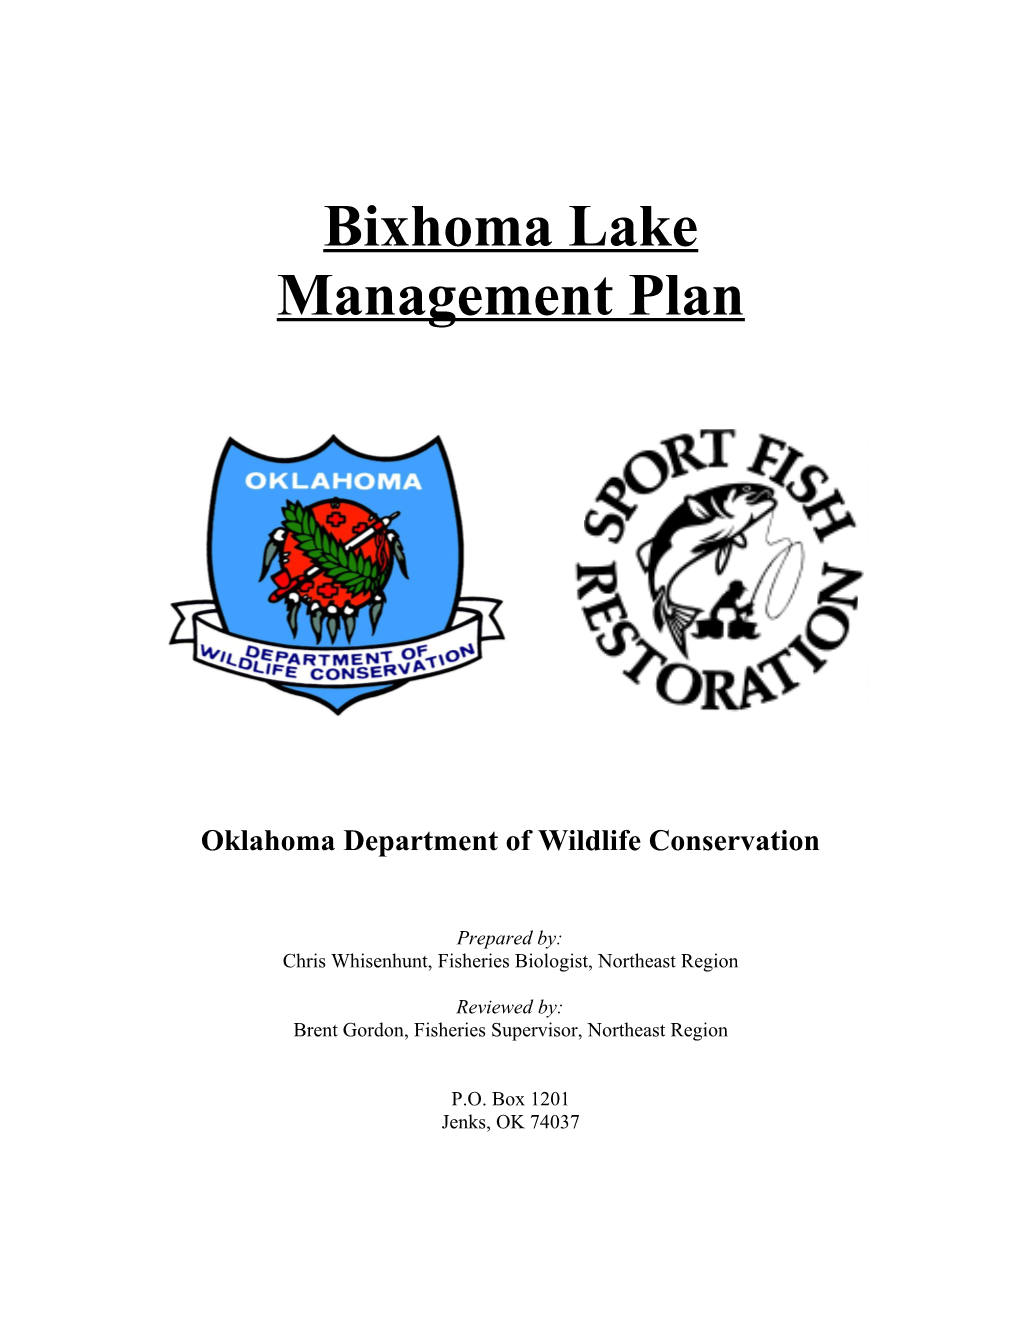 Bixhoma Lake Management Plan